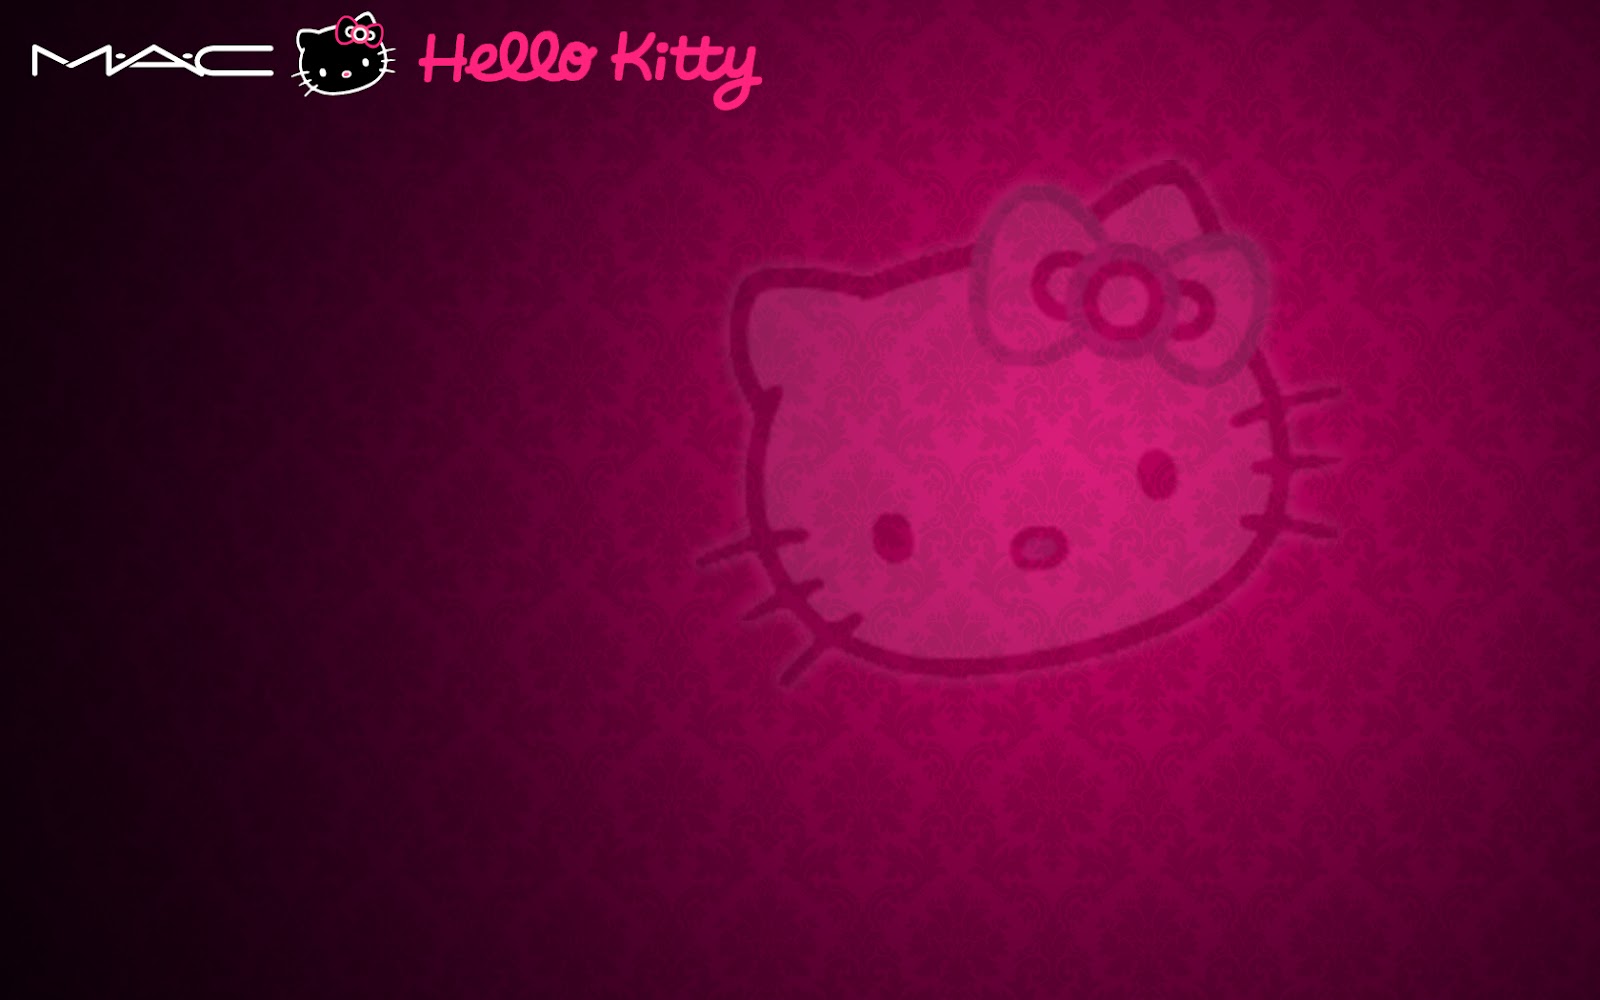 hello kitty wallpaper hello kitty wallpaper pink cute hello kitty 1600x1000